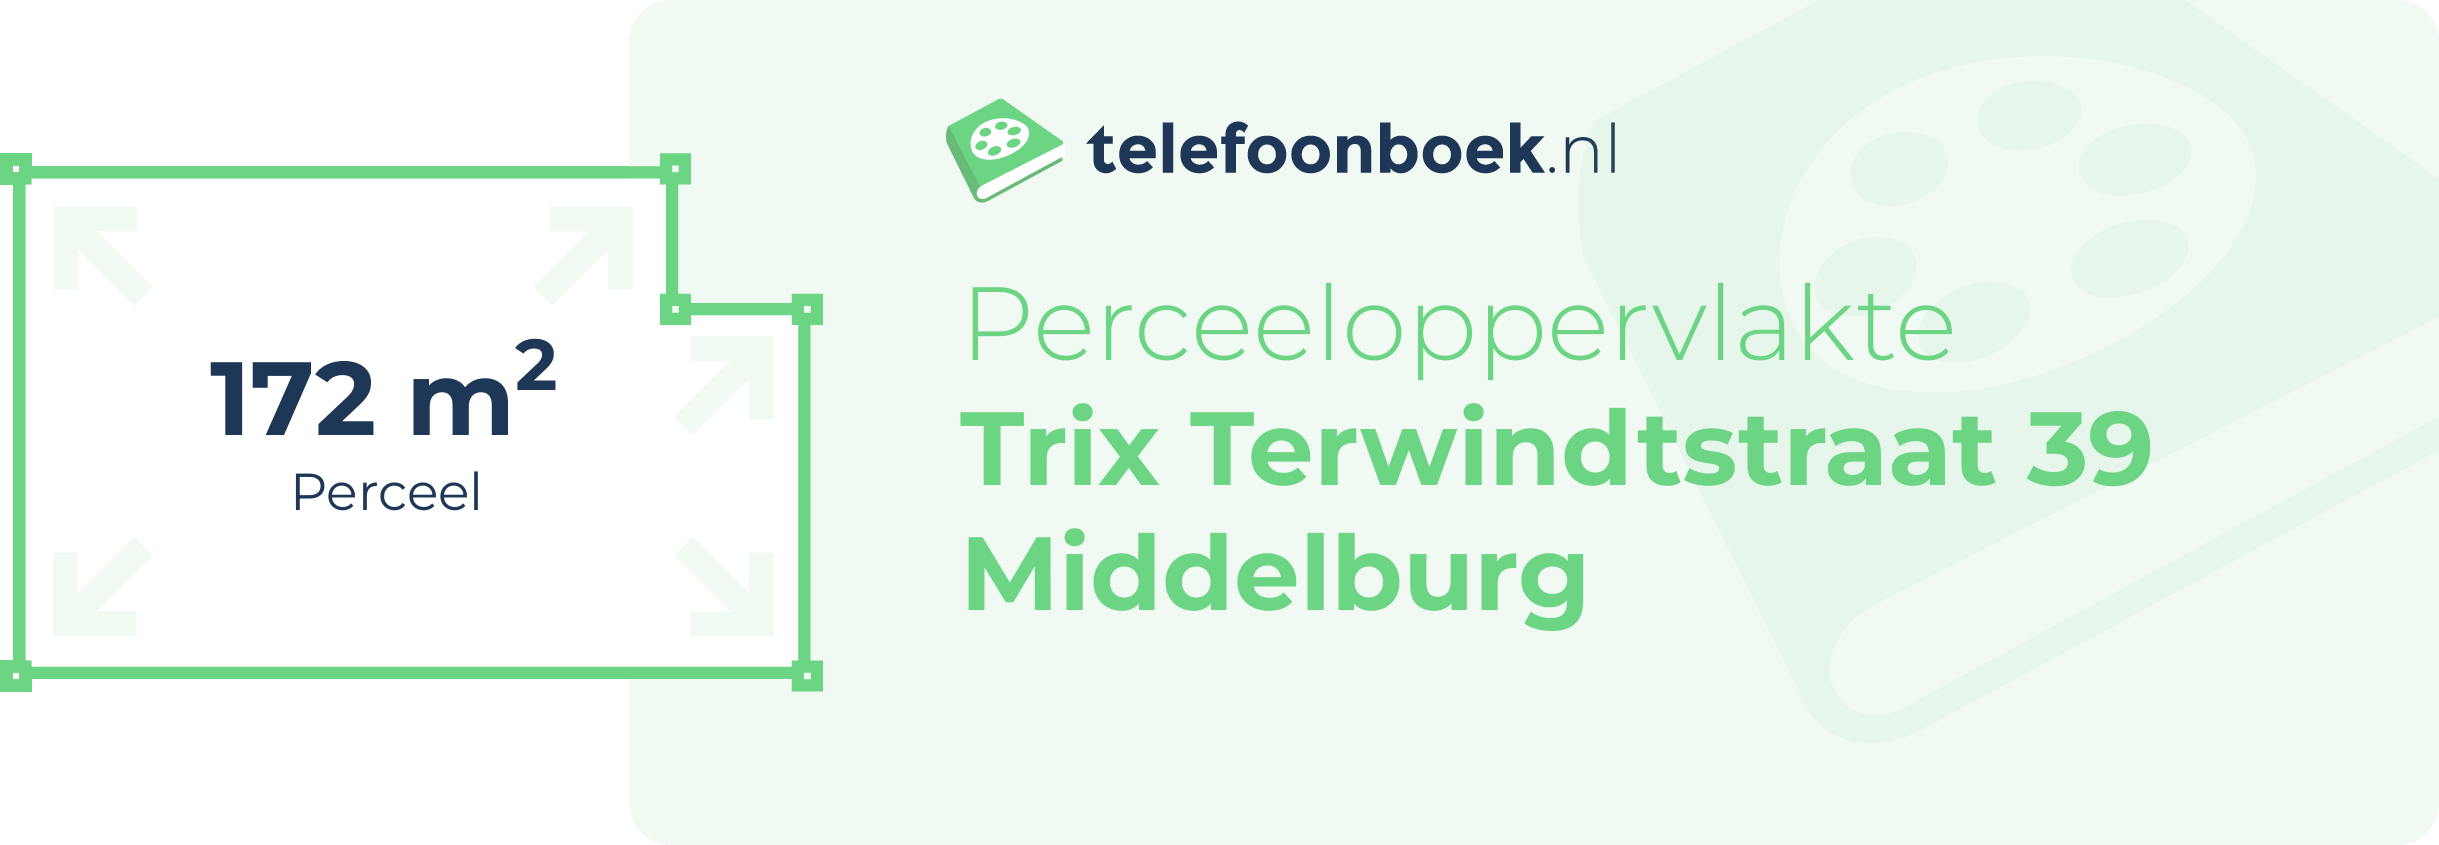 Perceeloppervlakte Trix Terwindtstraat 39 Middelburg